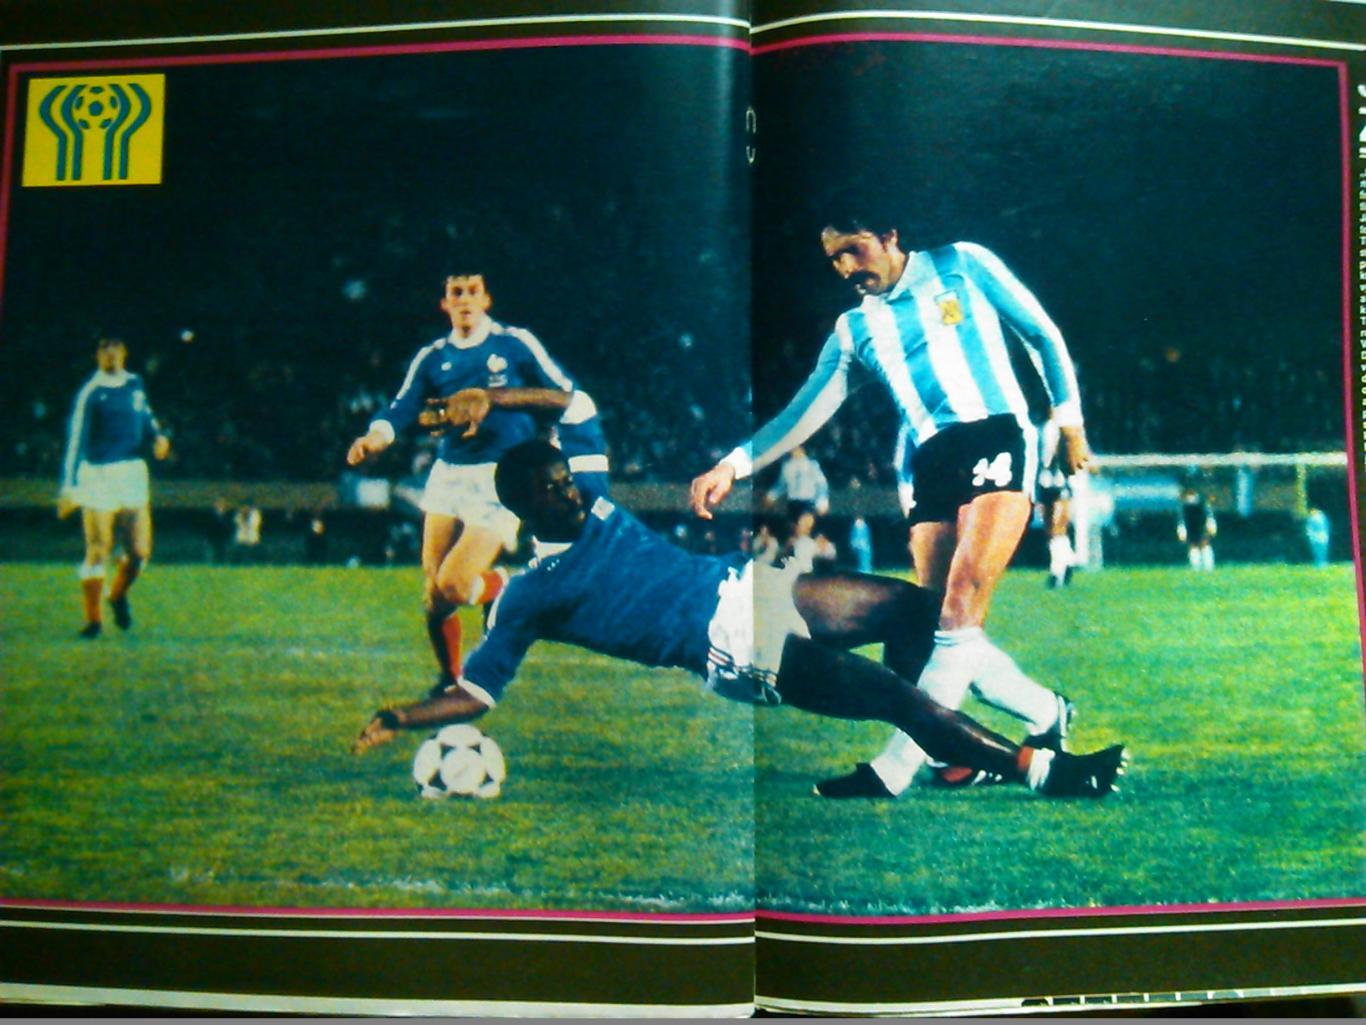 Stadion (Стадион).№ 29.1978.(Чех.) Футбол-Аргентина-78 ЧМ. Гуртом знижки 50%! 3